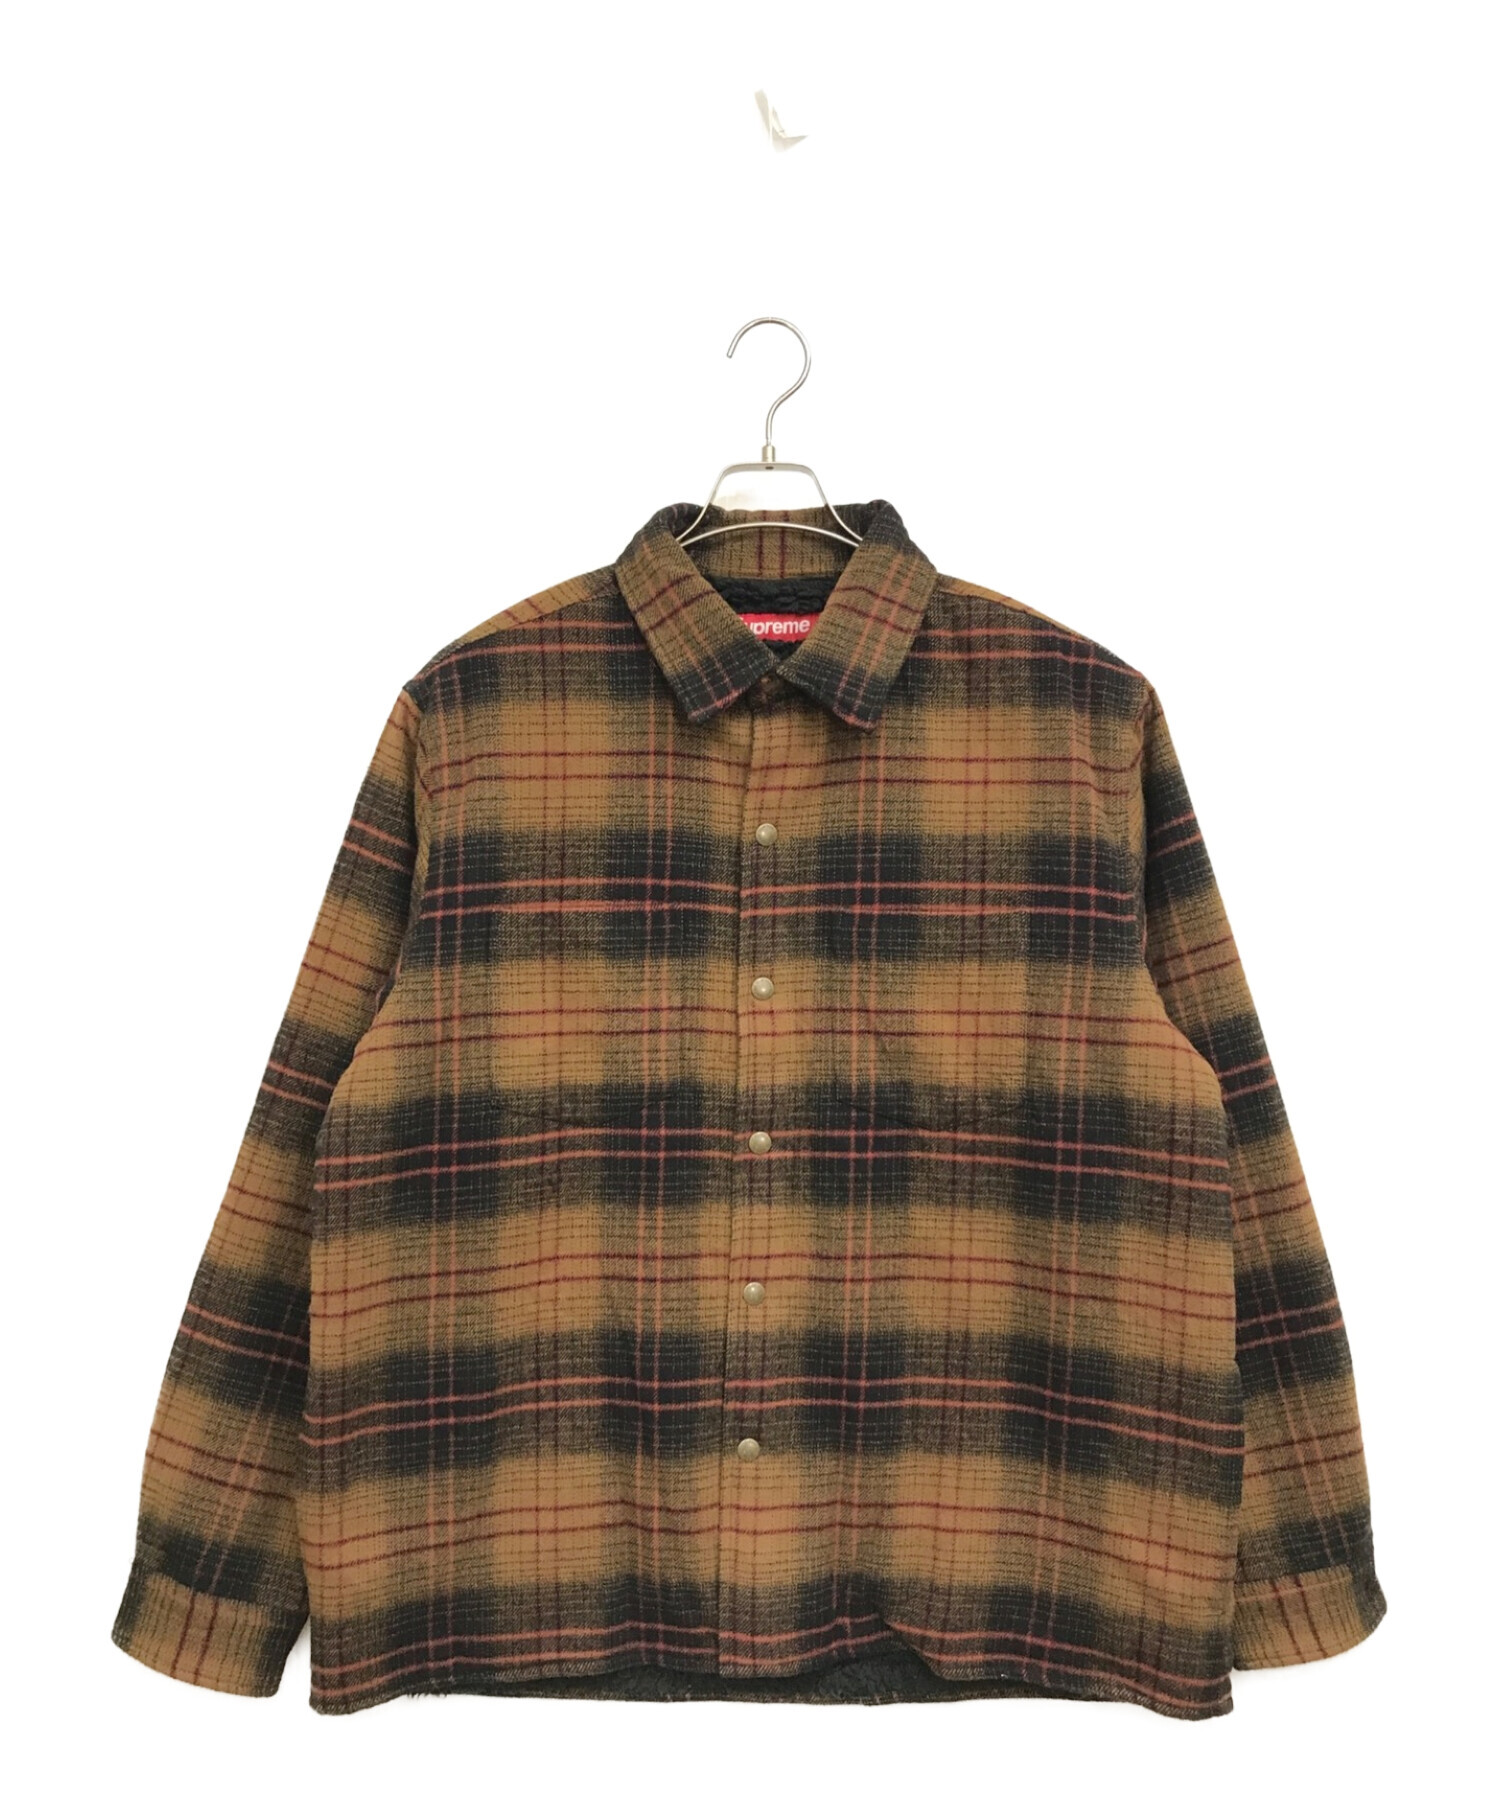 SUPREME (シュプリーム) 23AW Lined Flannel Snap Shirt ブラウン×ブラック サイズ:L